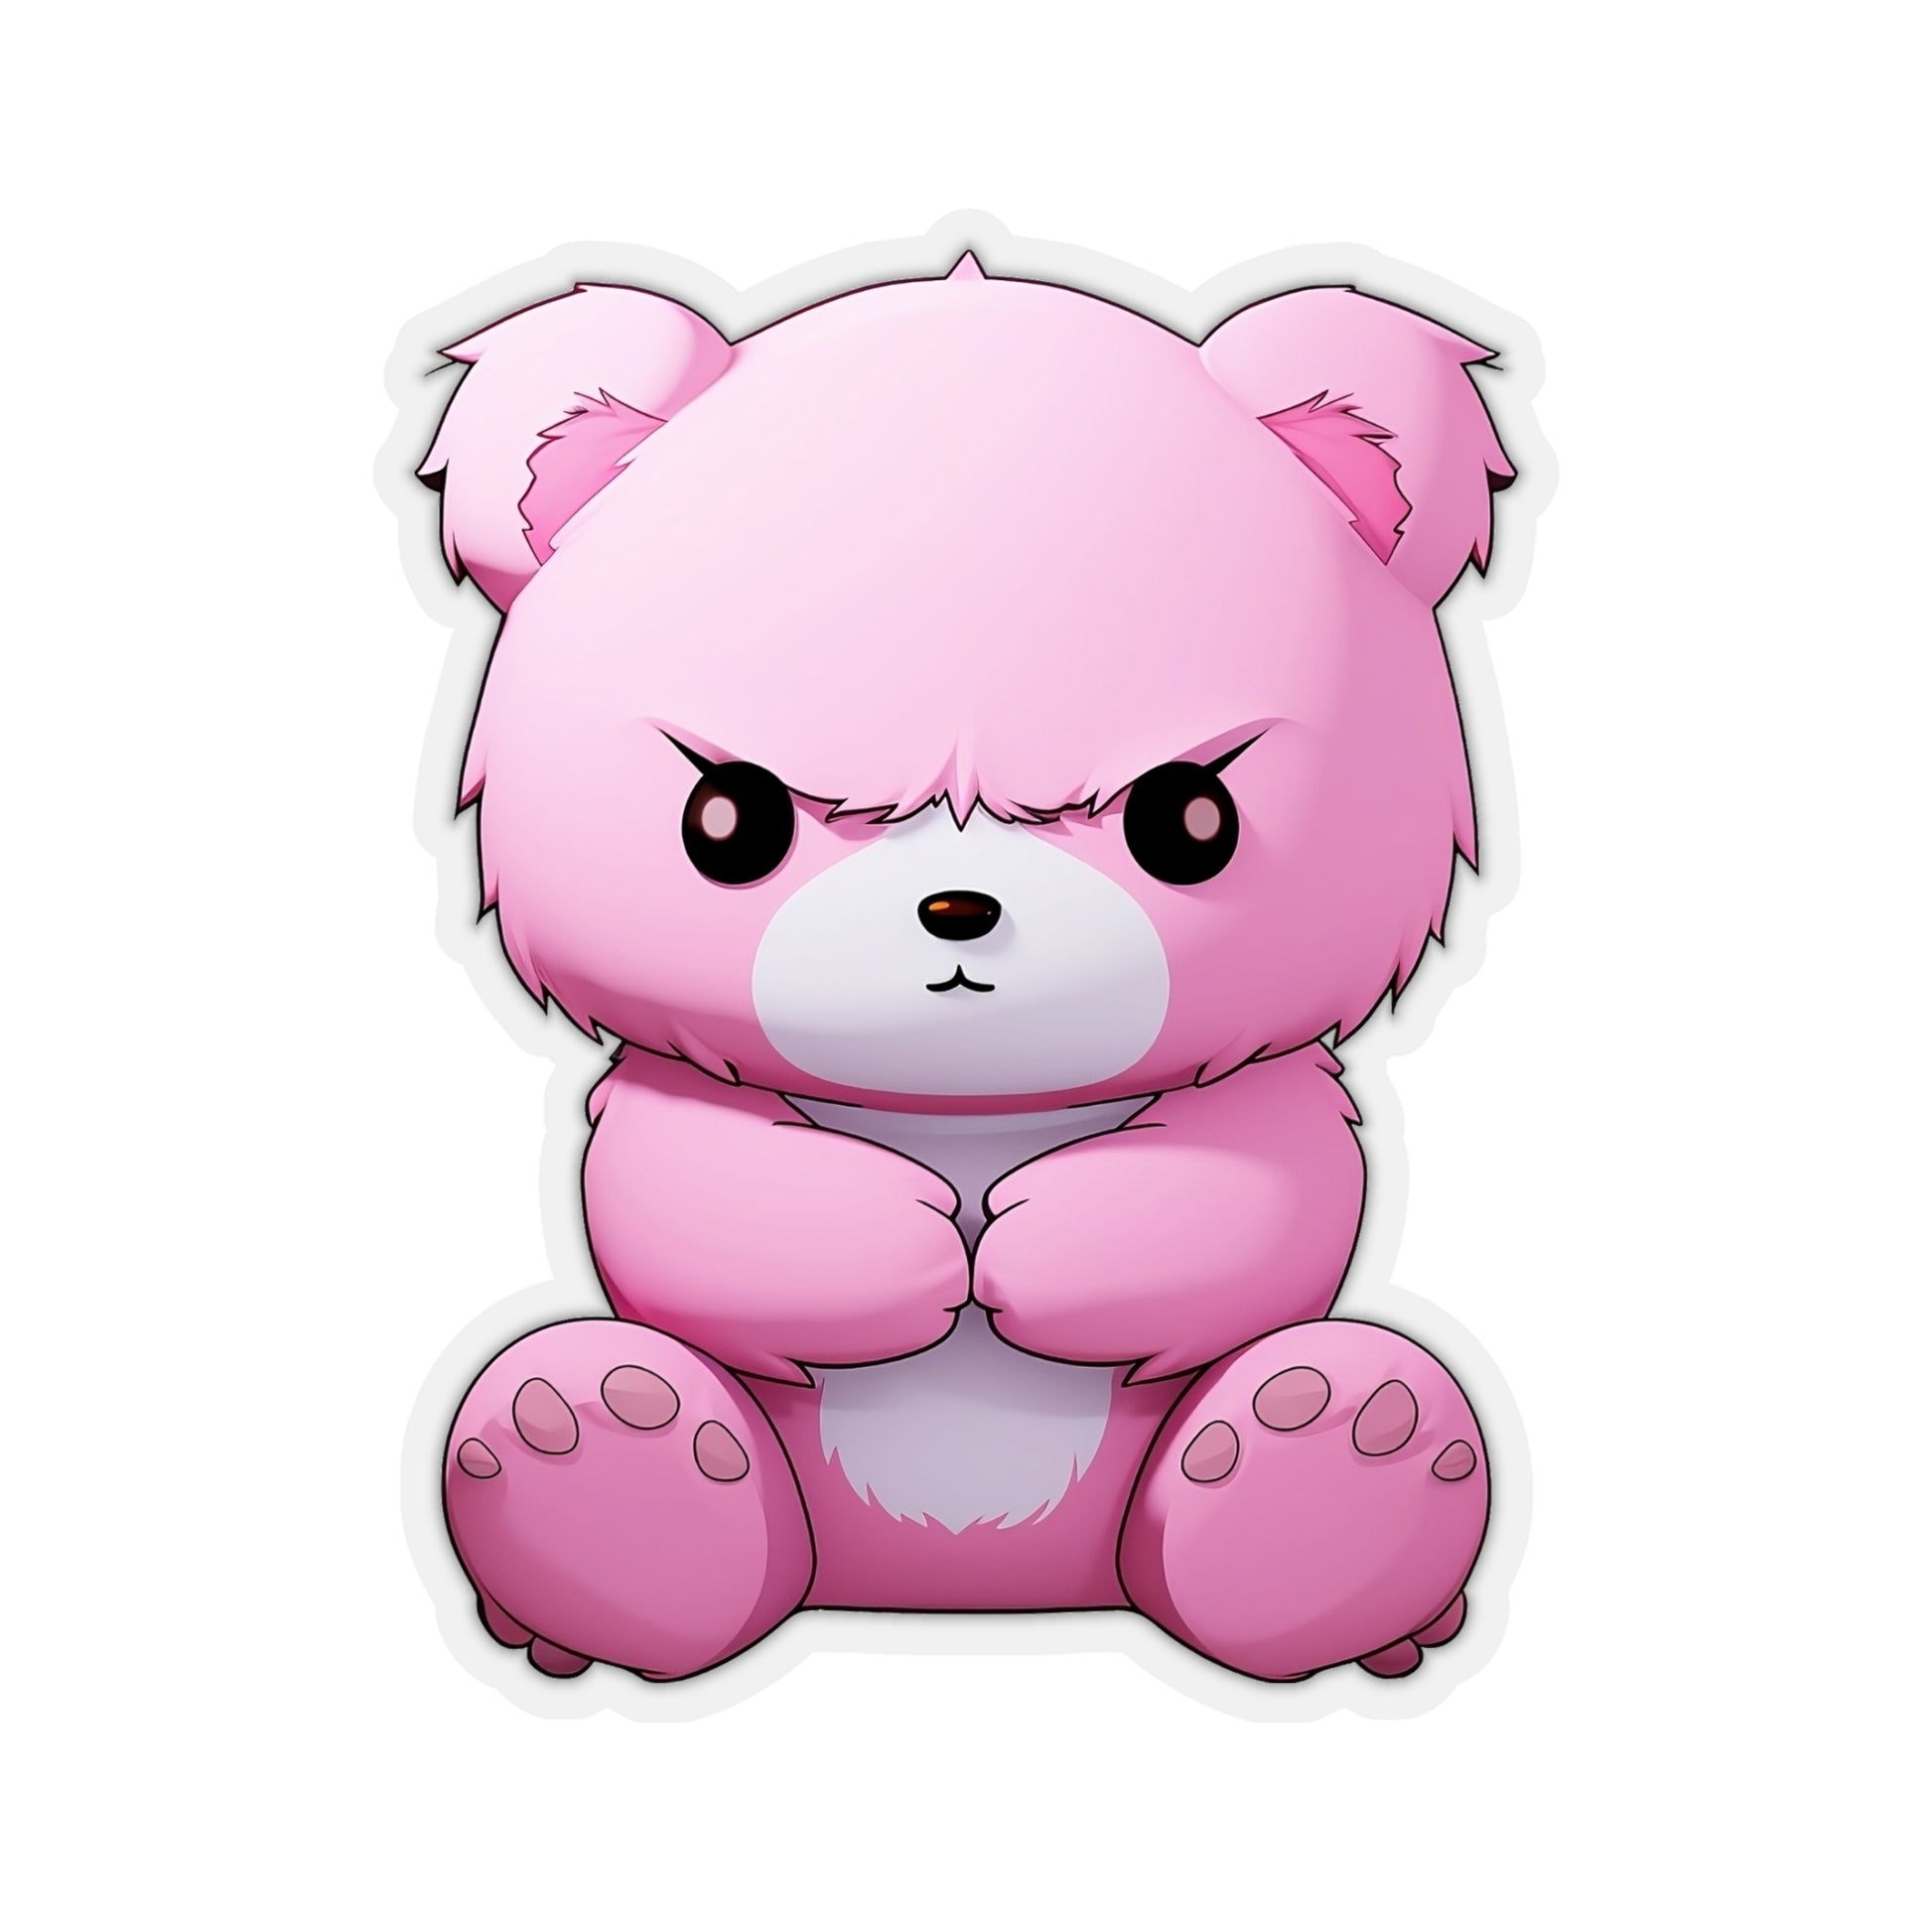 Kawaii Pink Cartoon Stickers – My Heart Teddy